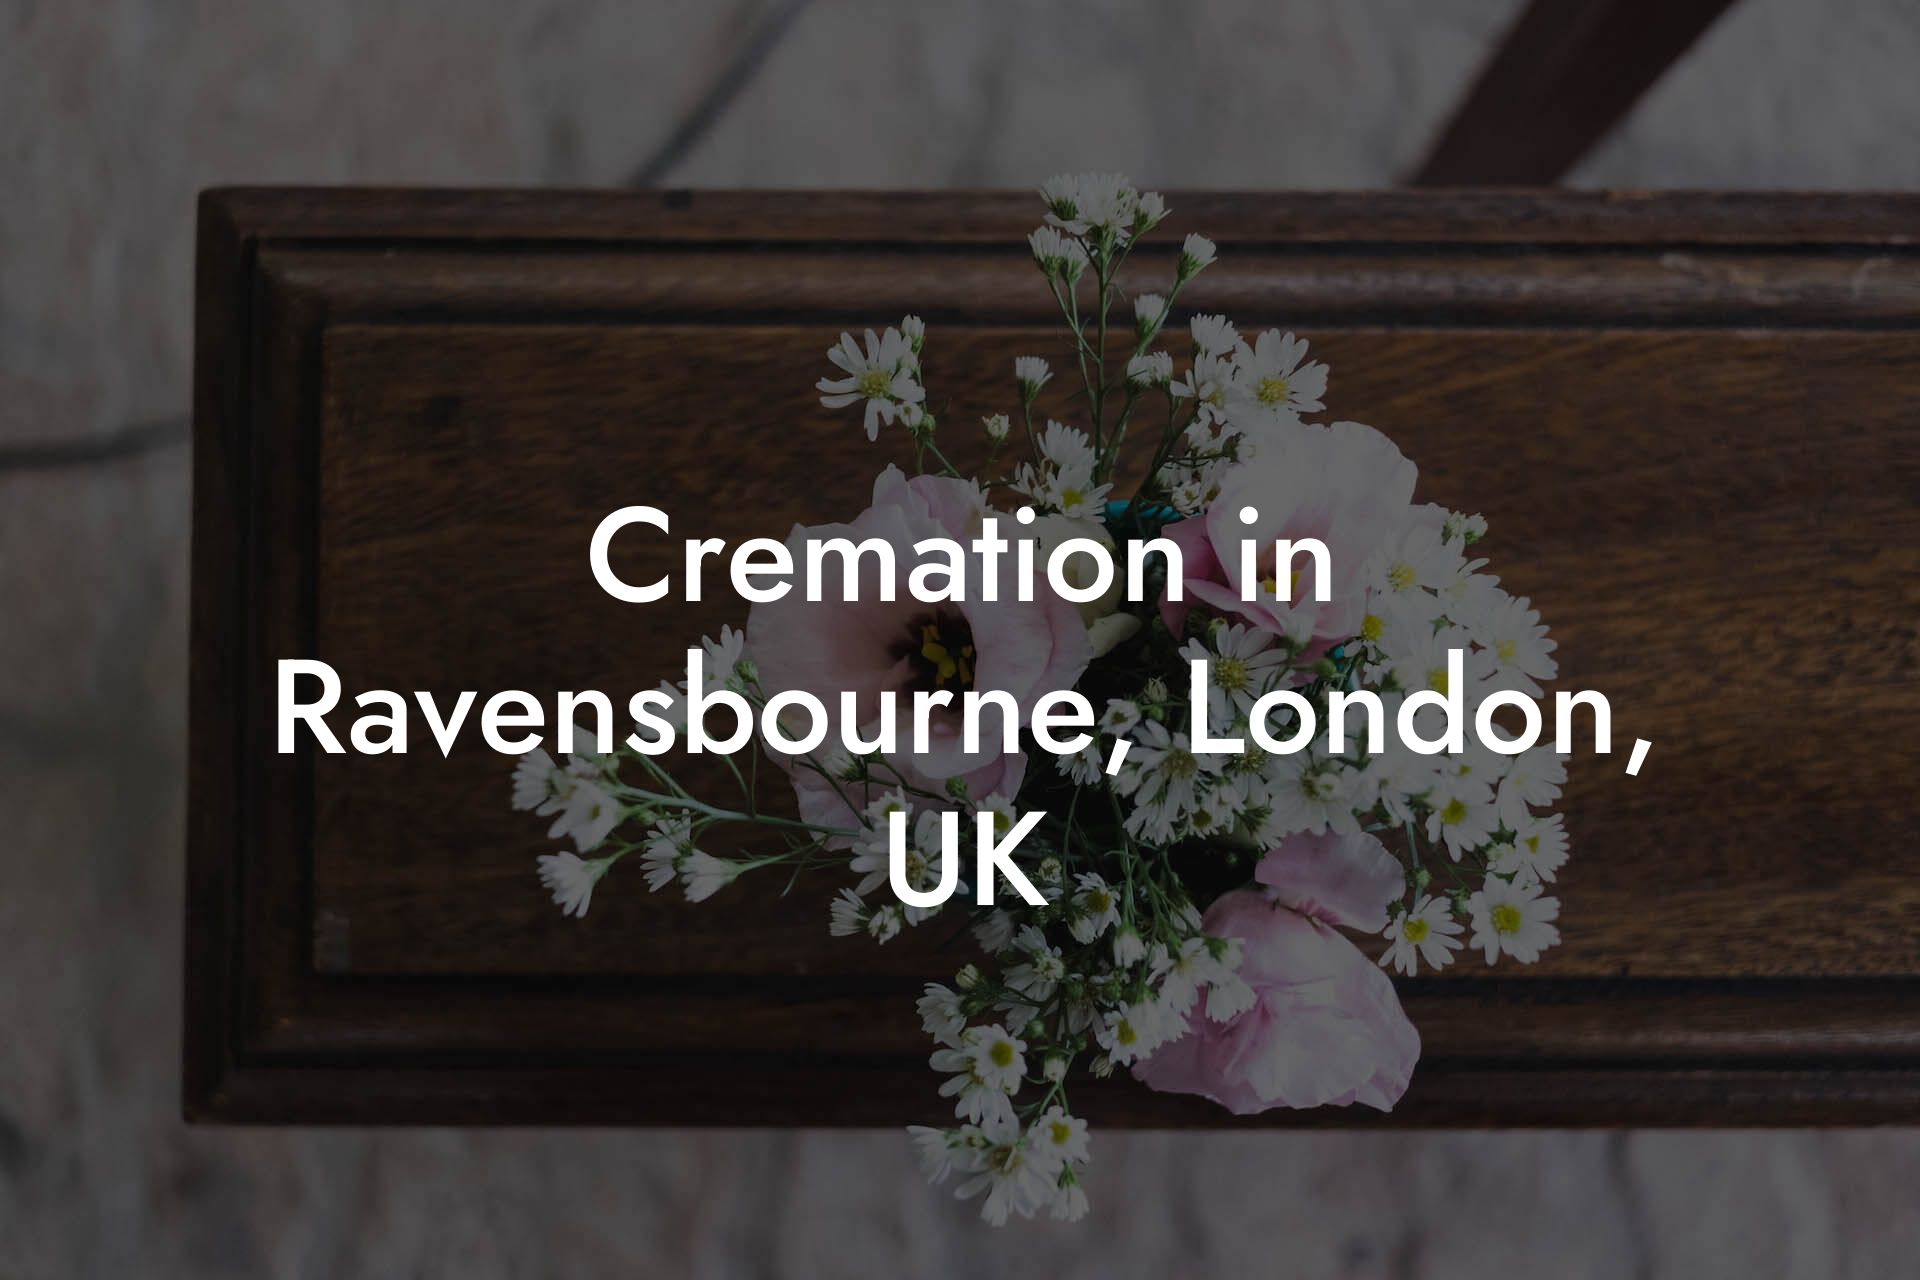 Cremation in Ravensbourne, London, UK